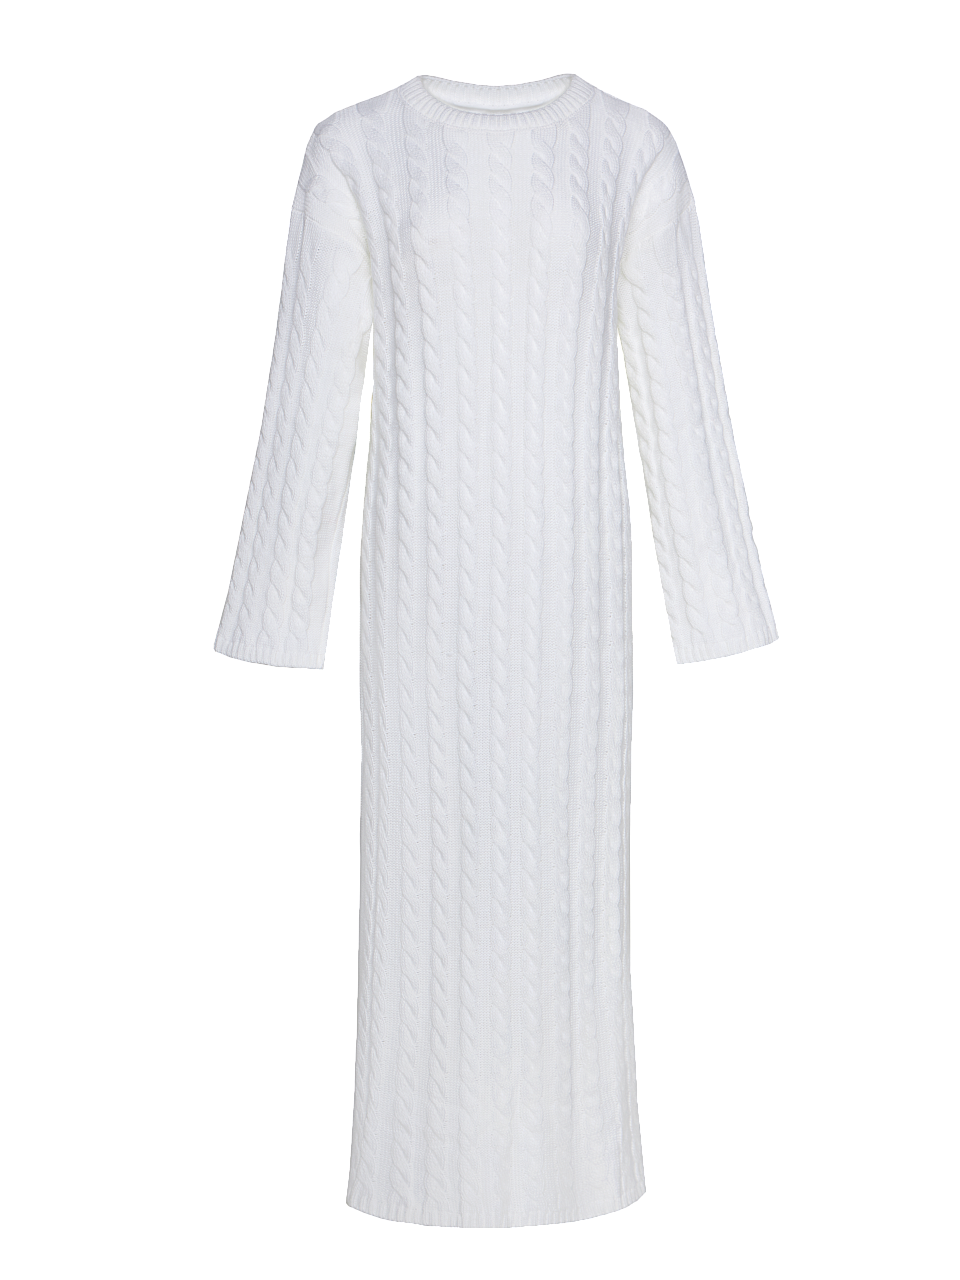 Женское платье Stimma Эмма, цвет - светло-молочный